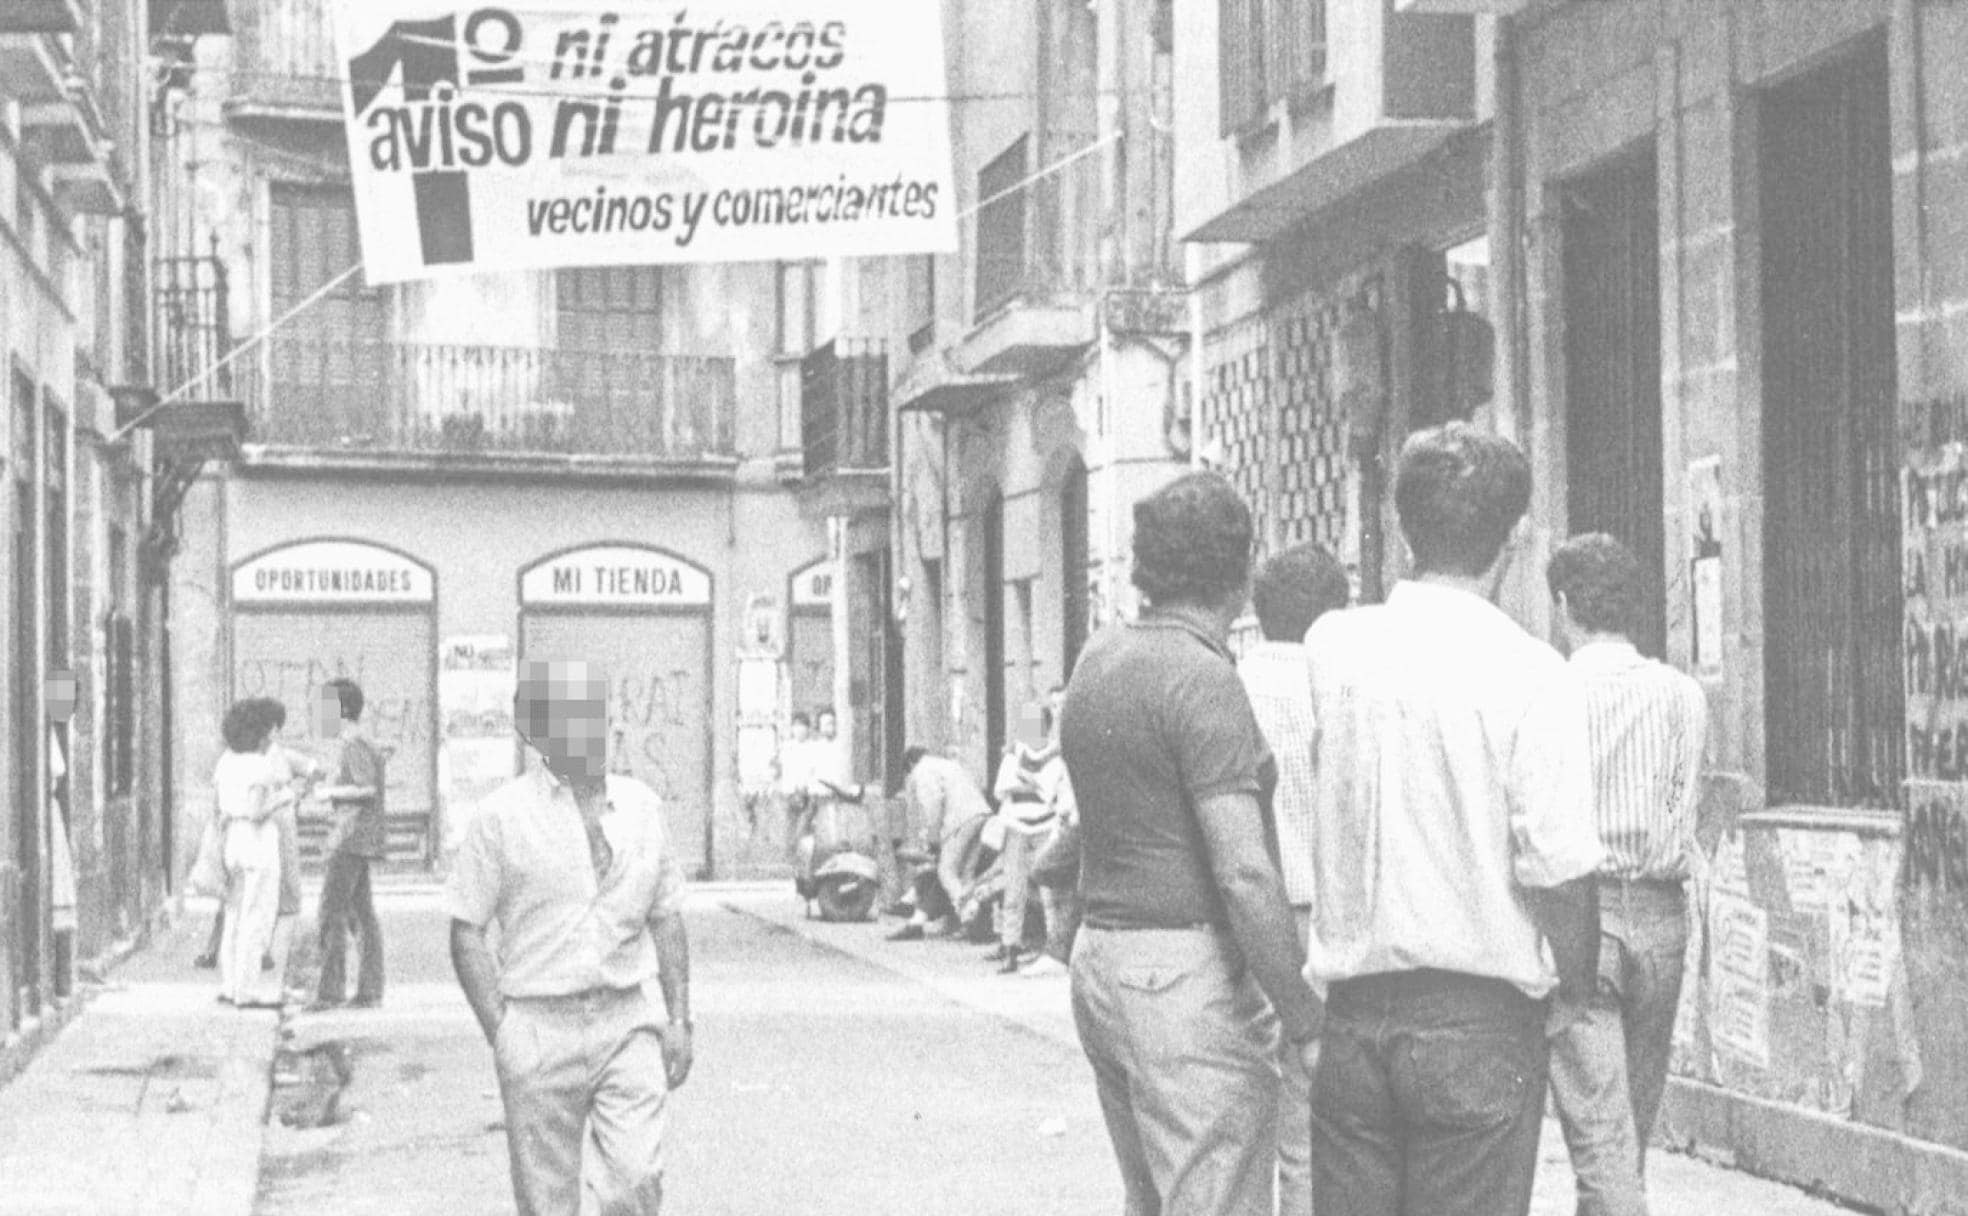 Barrenkale, en el Casco Viejo de Bilbao, en los años ochenta, con una pancarta colocada por vecinos y comerciantes, afectados por el consumo de drogas.